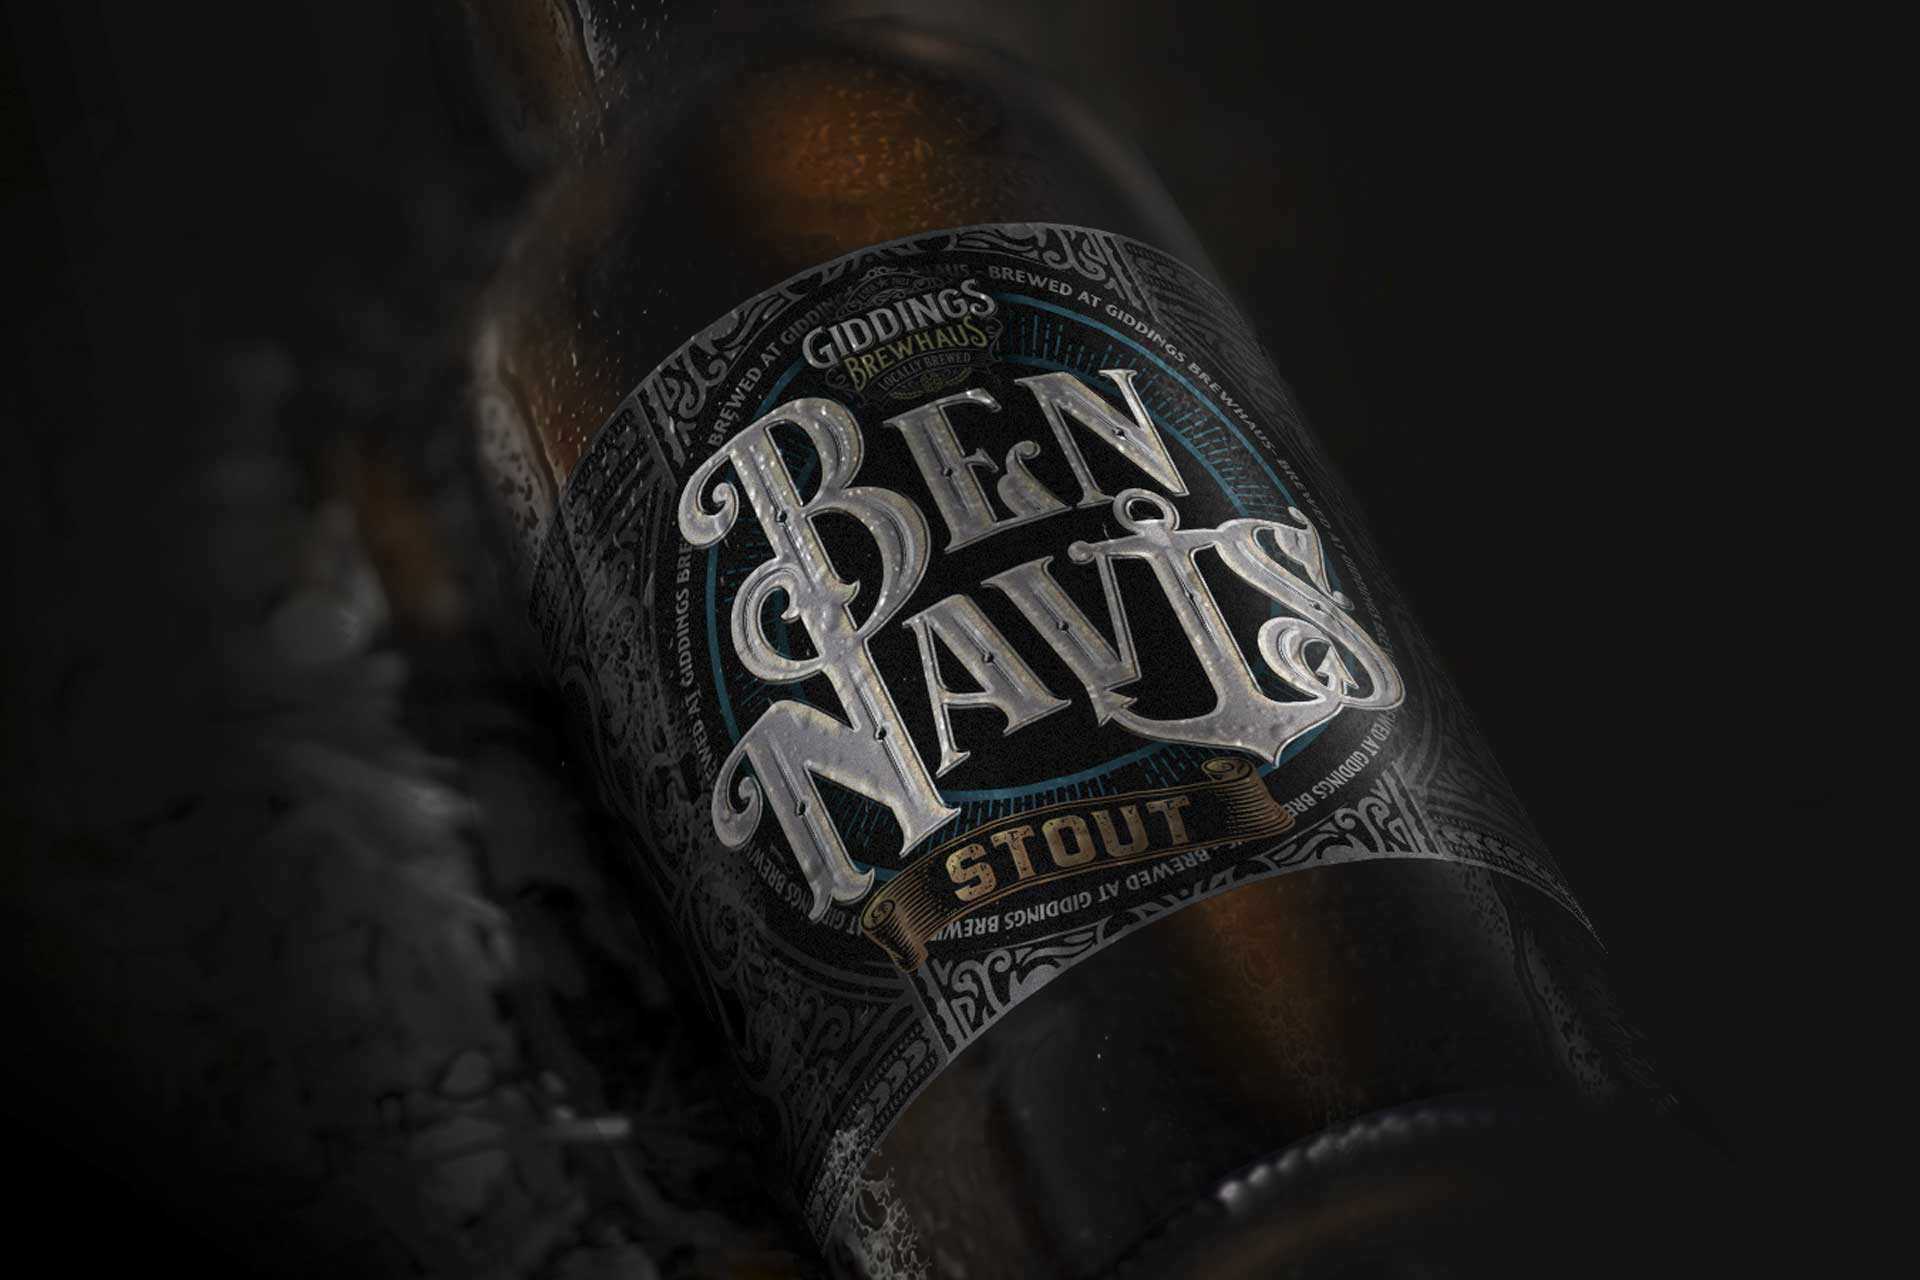 Ben Navis Beer Label Design